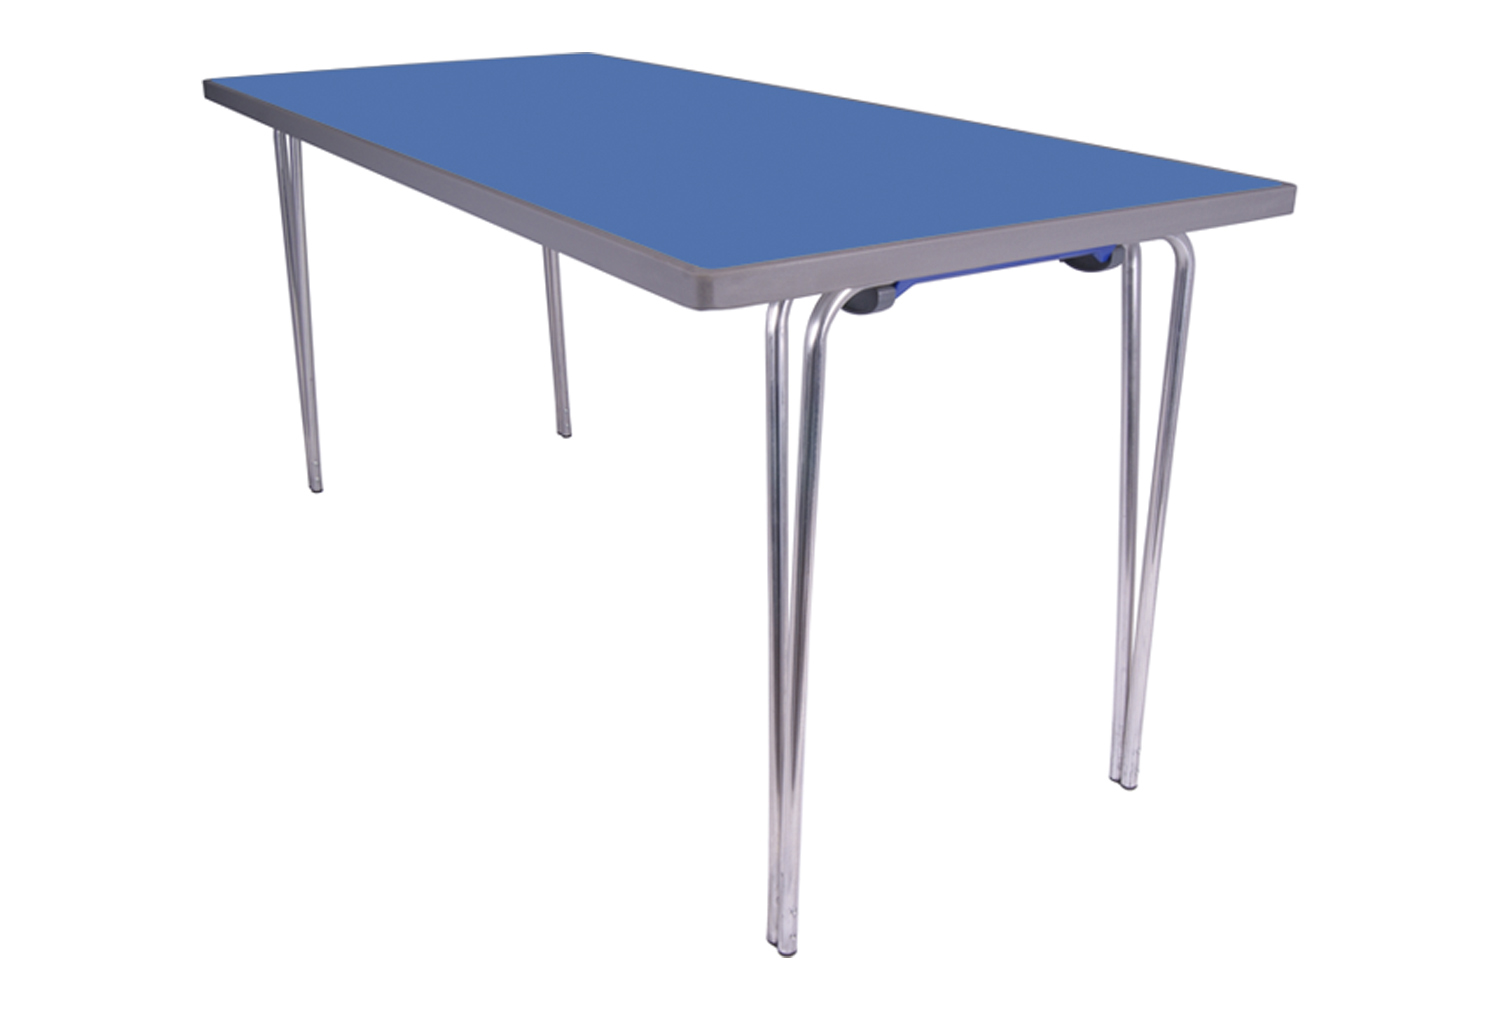 Gopak Premier Folding Tables, 183wx76d (cm), Azure Blue